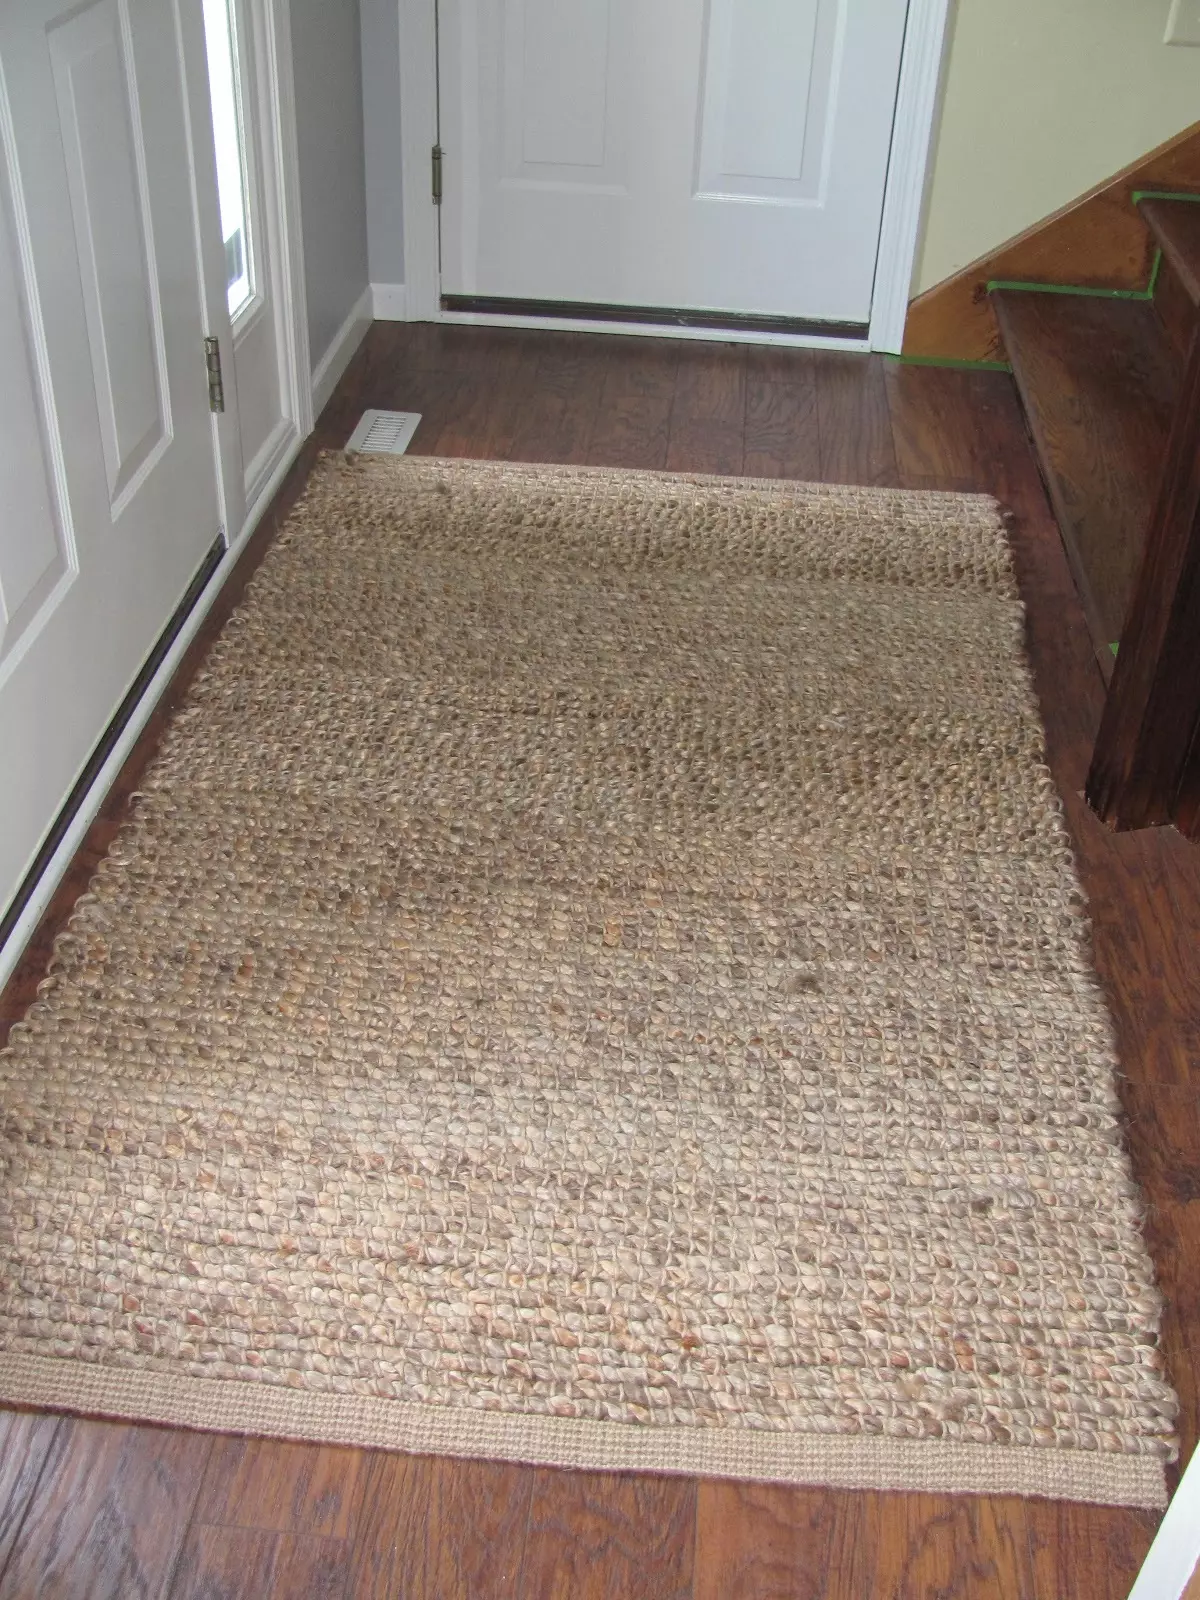 Tepper i gangen (57 bilder): sveisede tepper og matter for sko i korridoren, modell på gulvet fra teppe og andre materialer 9287_46